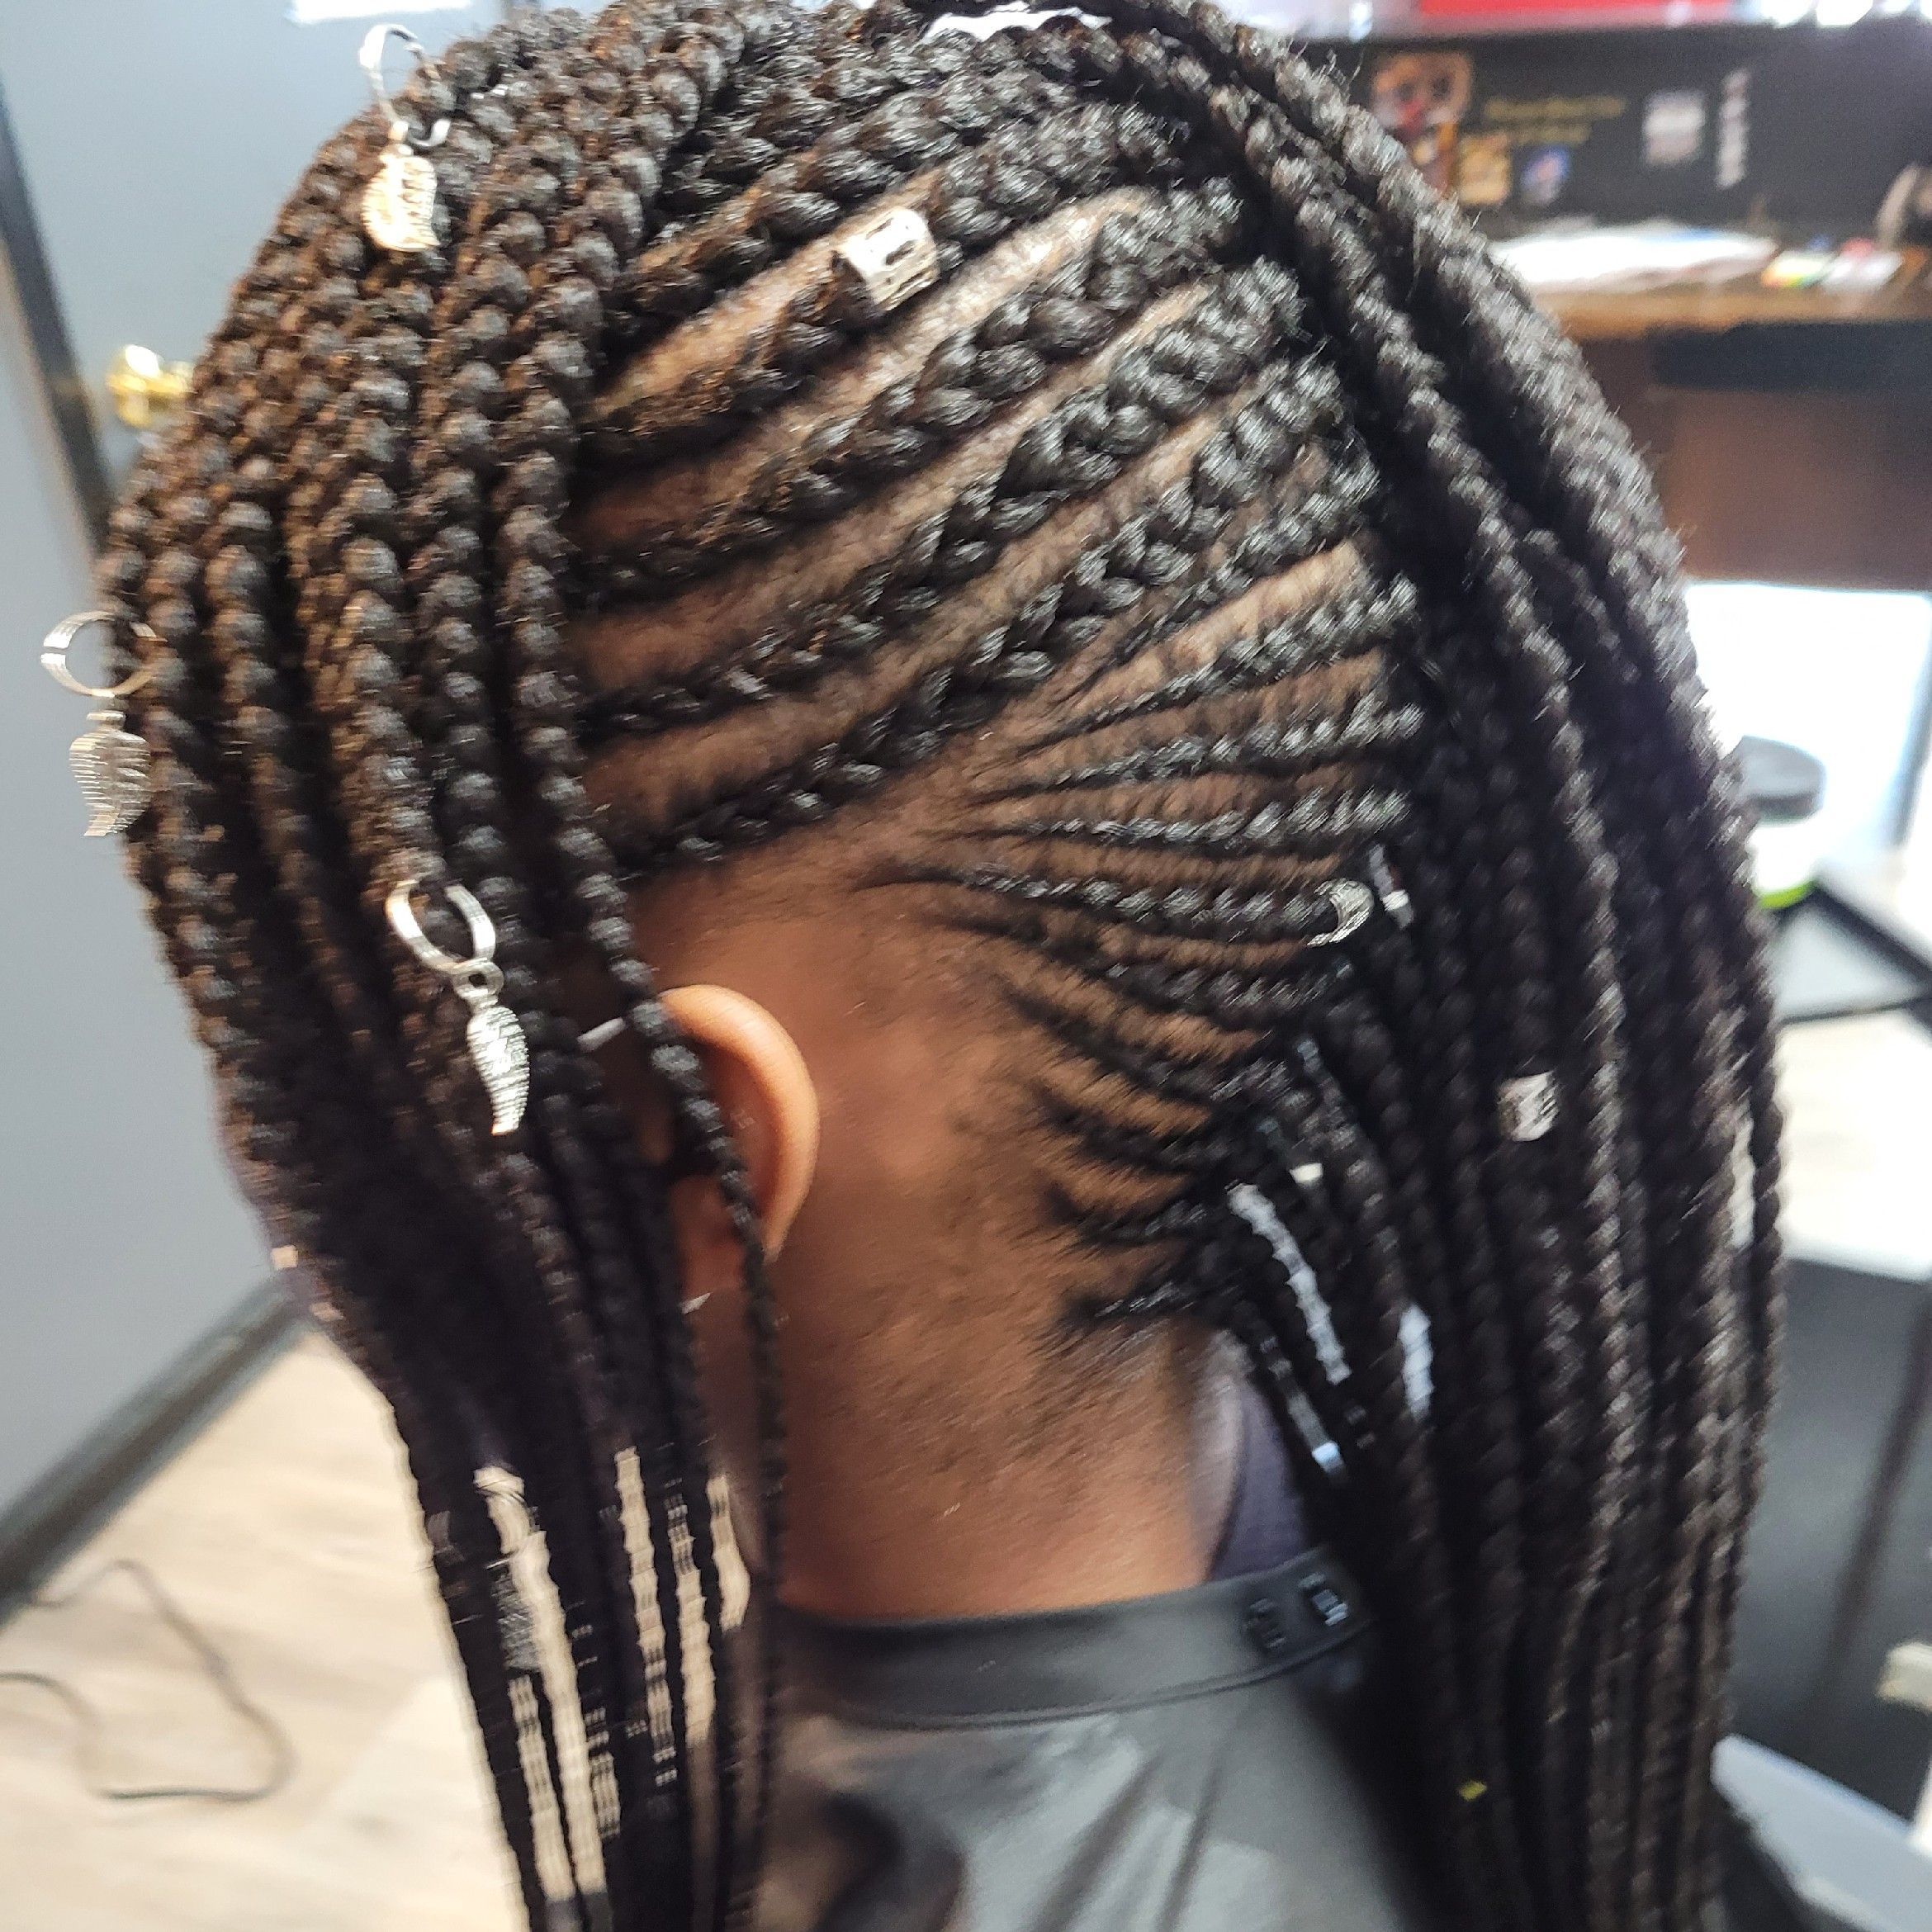 Adele Njoya African Hair Braiding, 760 Bosque Vista Point Colorado Springs, Colorado Springs, 80916